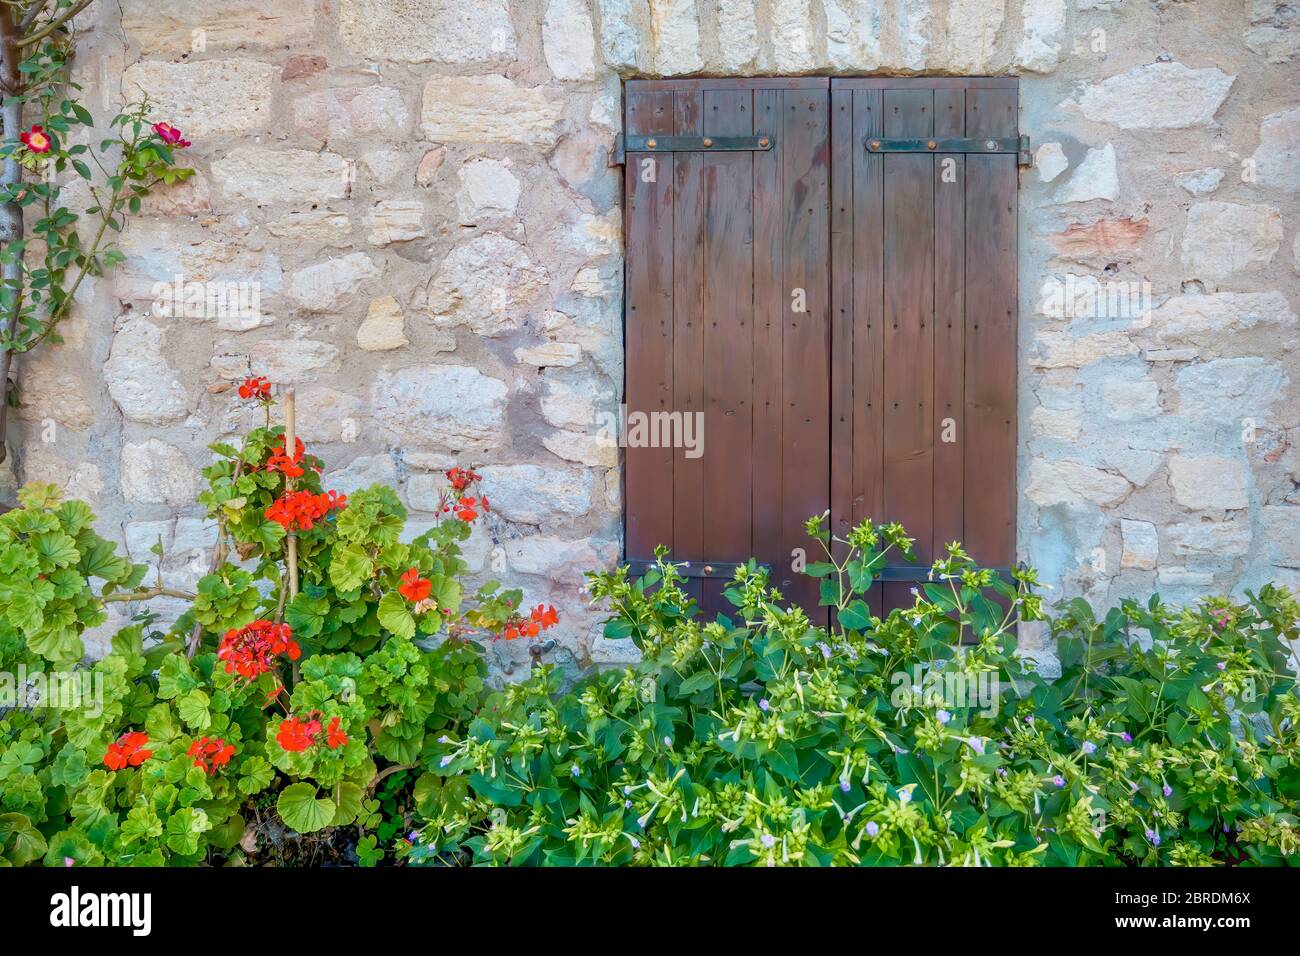 Persiane chiuse in legno sulla parete di pietra di un antico casale francese in un villaggio rurale in Provenza, Francia. Foto Stock